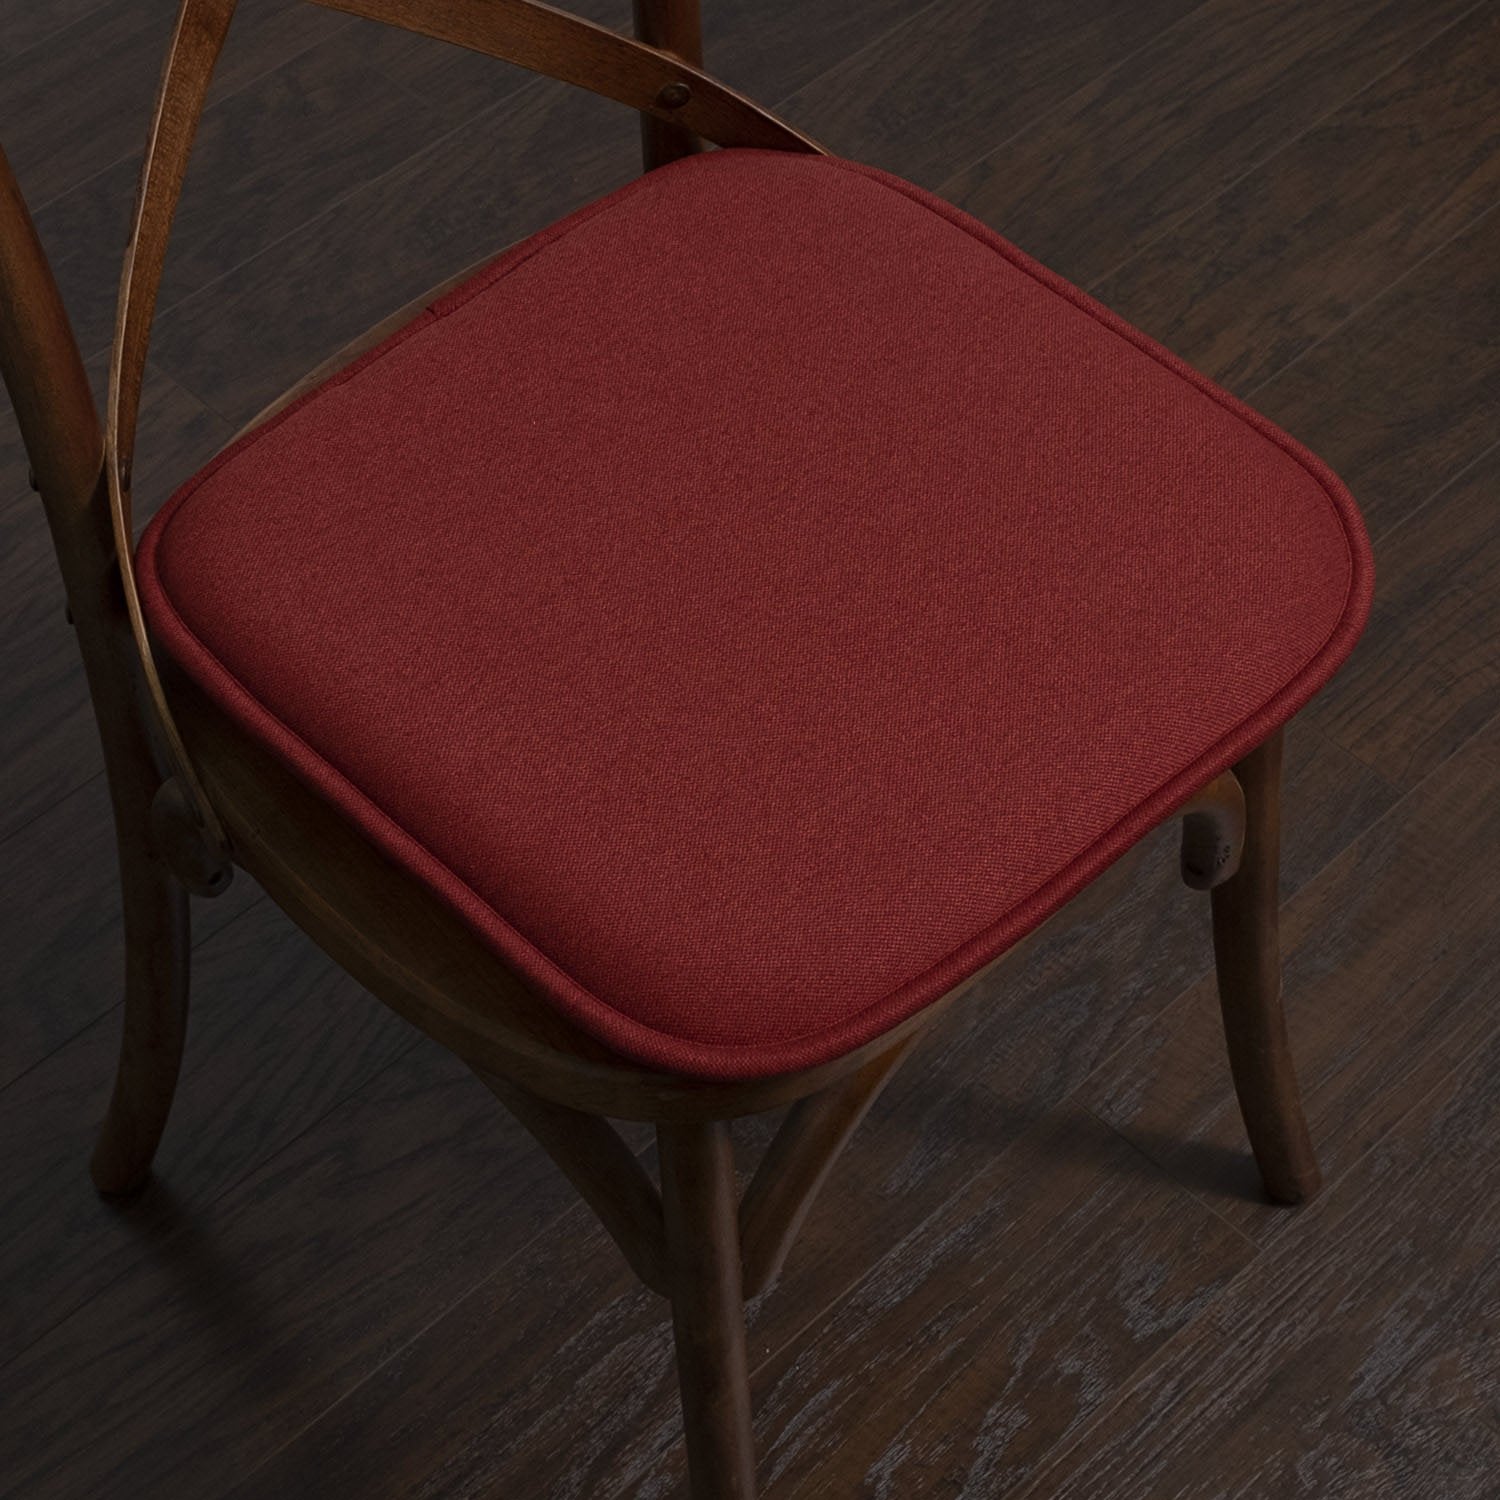 Charlotte Jacquard Chair Cushion Set Burgundy - Chair